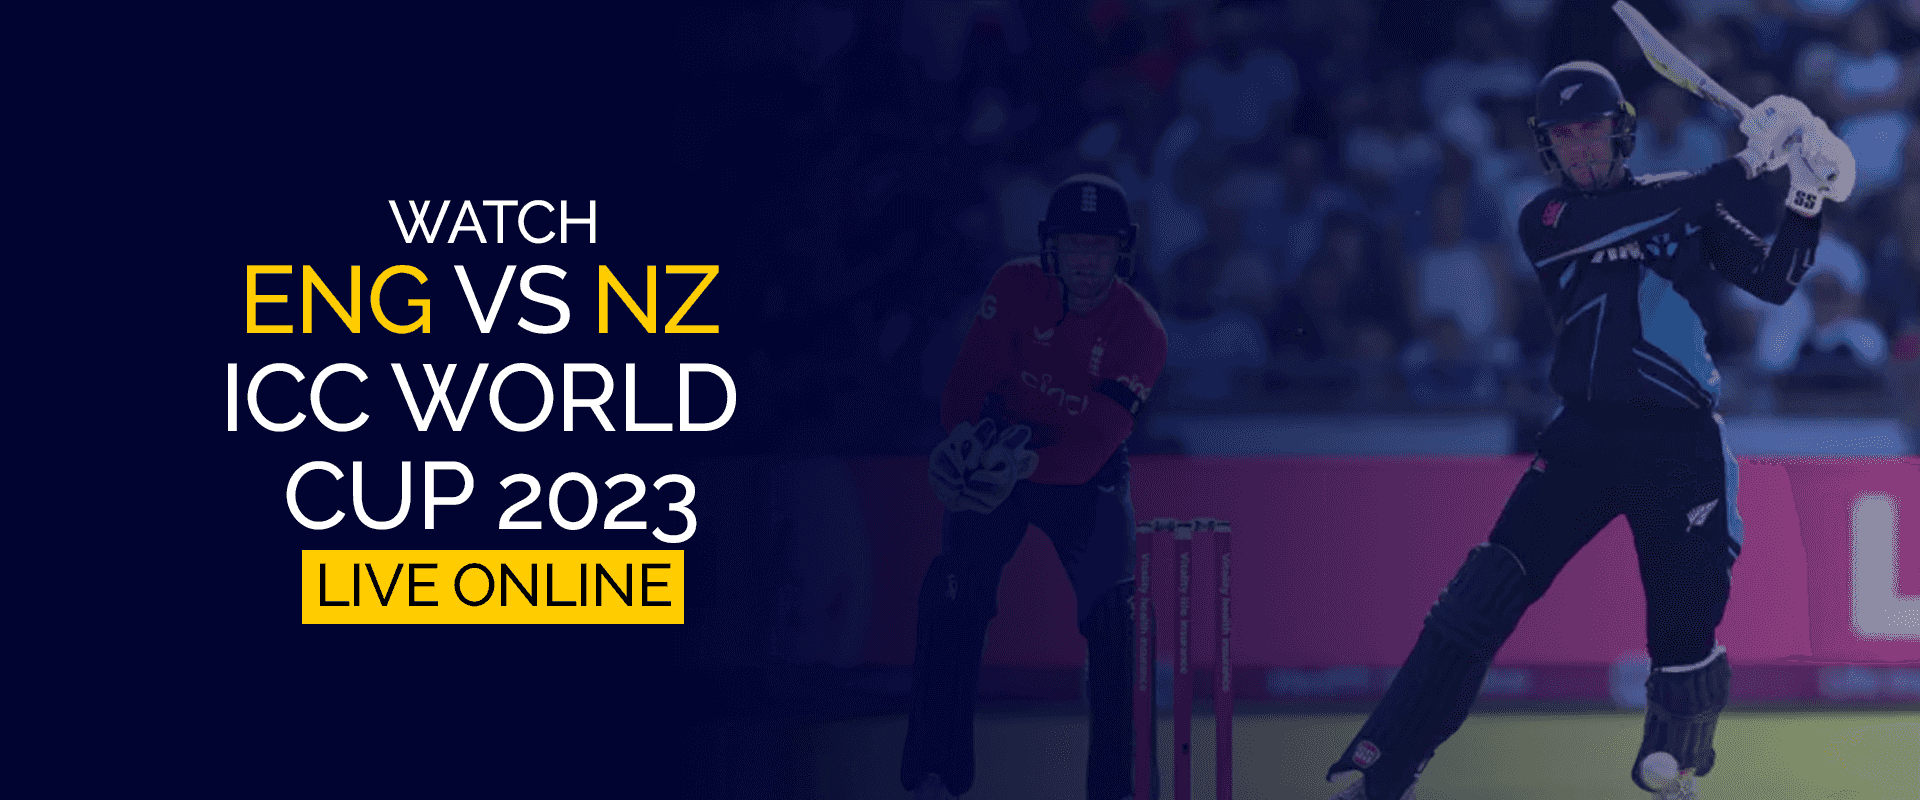 Watch ENG vs NZ ICC World Cup 2023